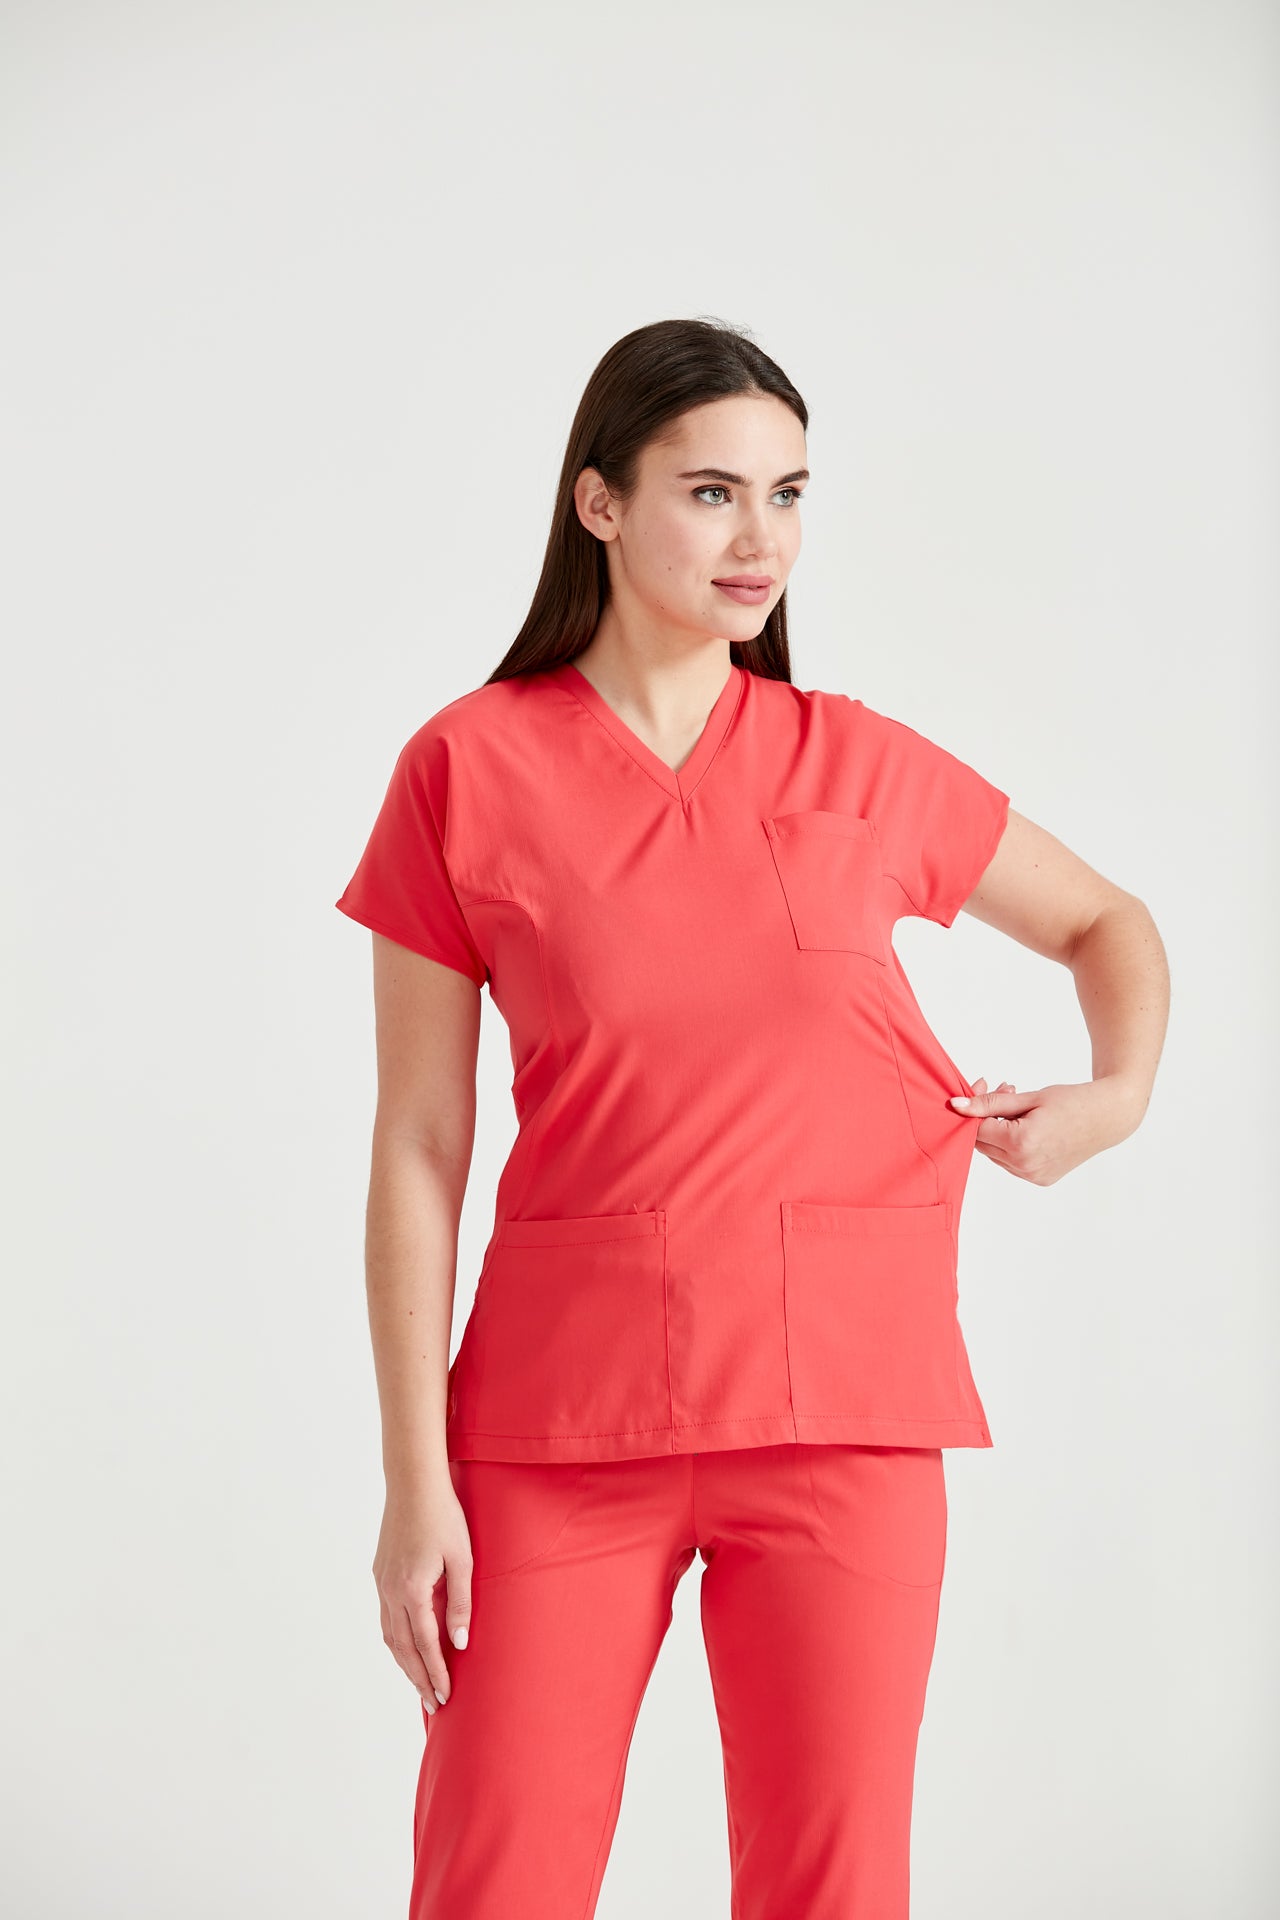  Asistenta medicala imbracata in costum din elastan rosu corai Coral, vedere din profil